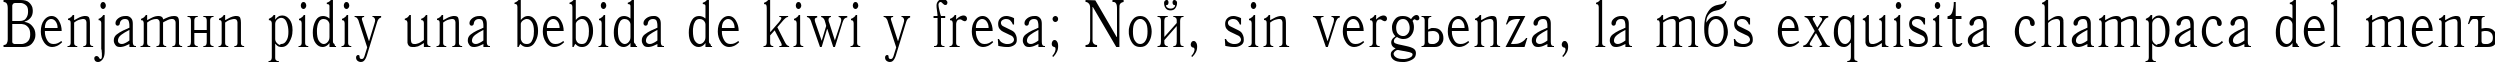 Пример написания шрифтом Antiqua85n текста на испанском